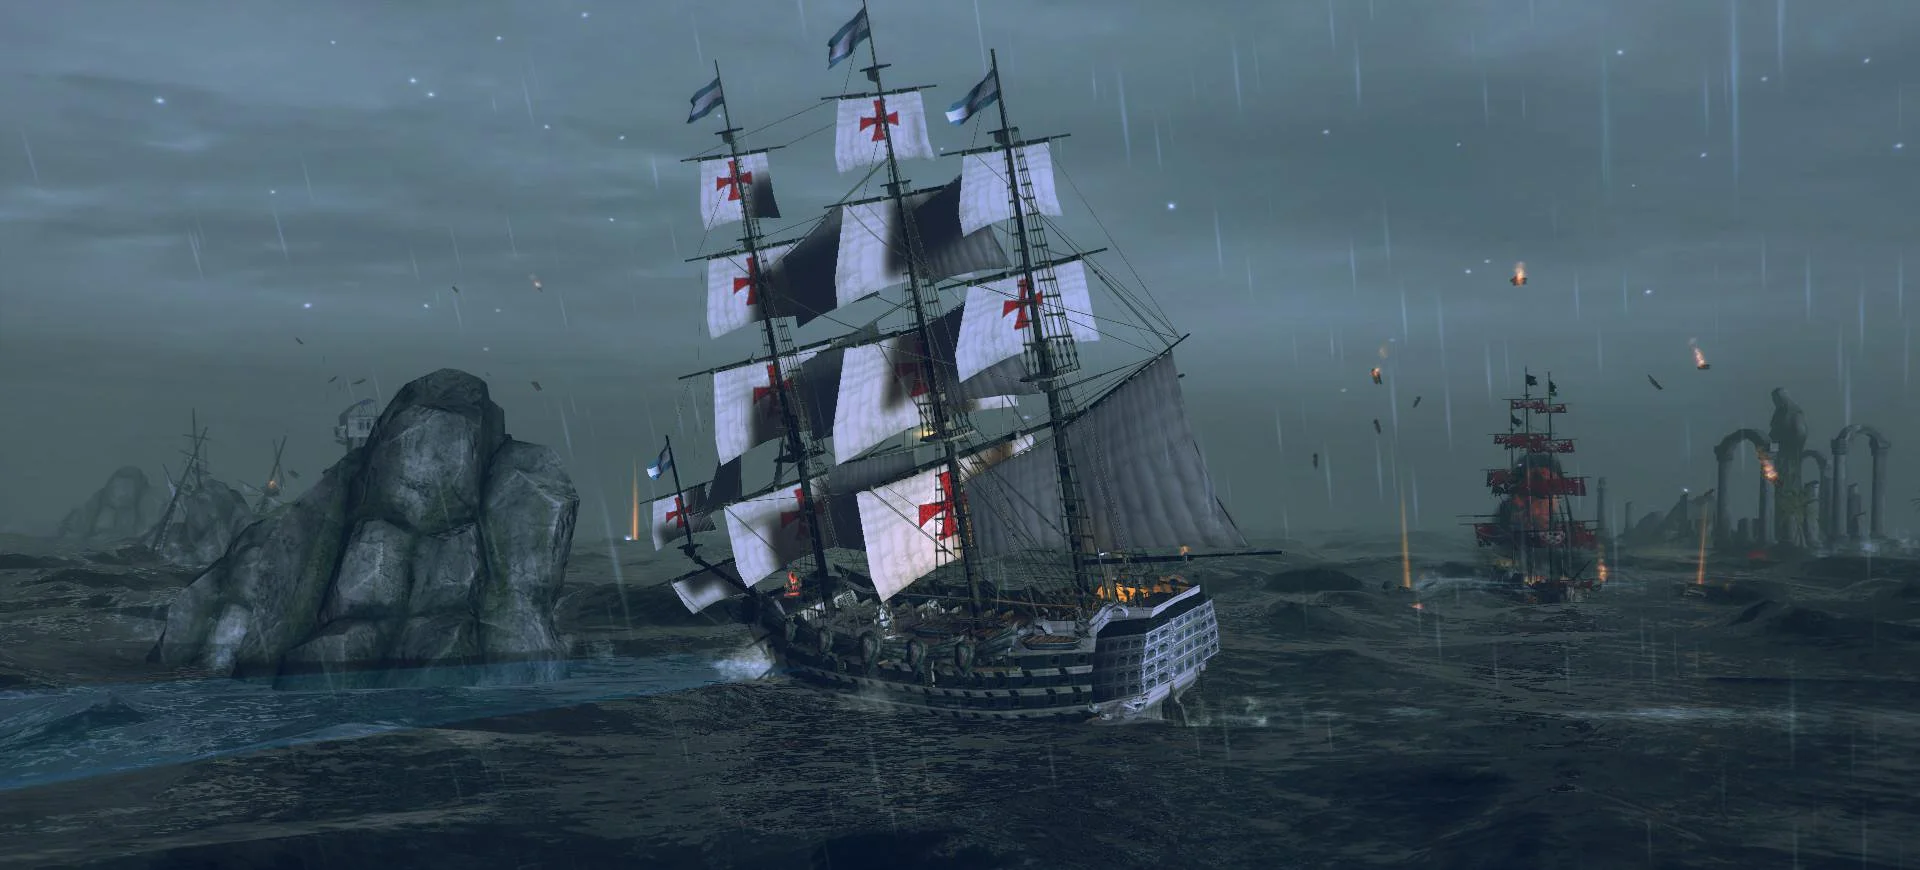 10 лучших игр про пиратов и морские приключения - фото 9